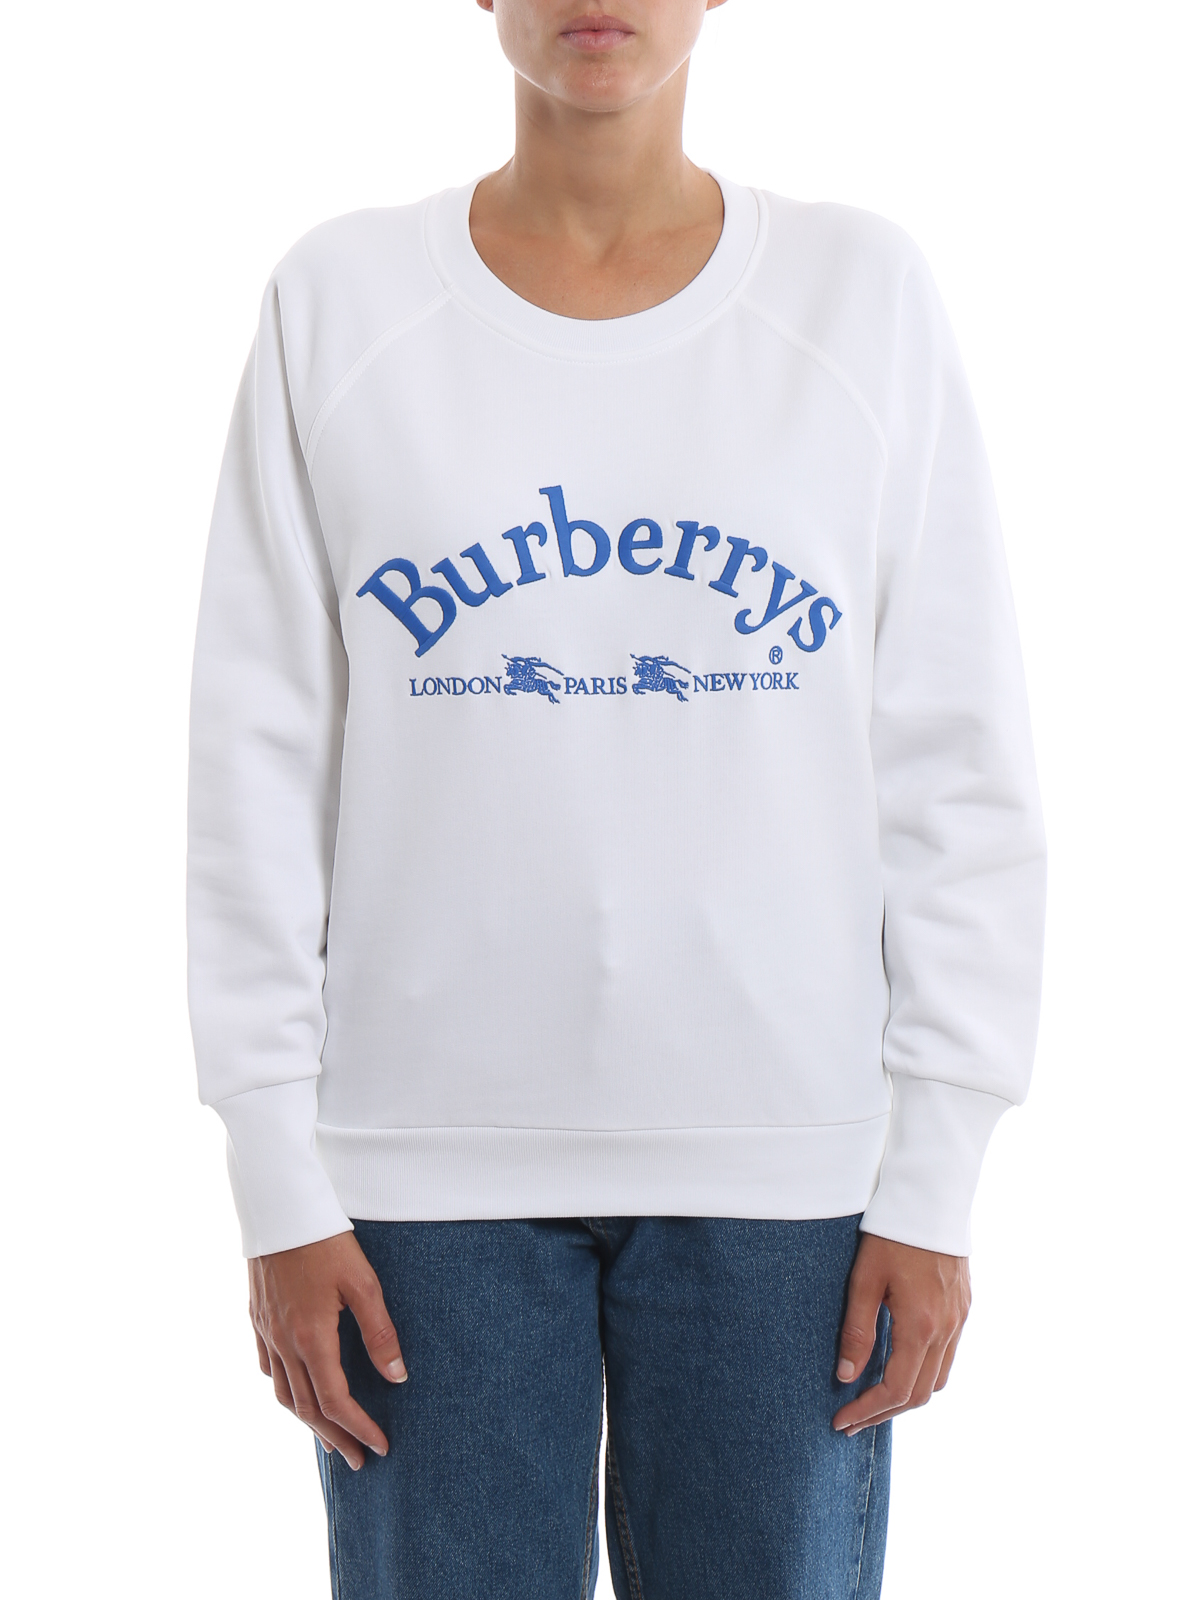 burberry sweatshirt white